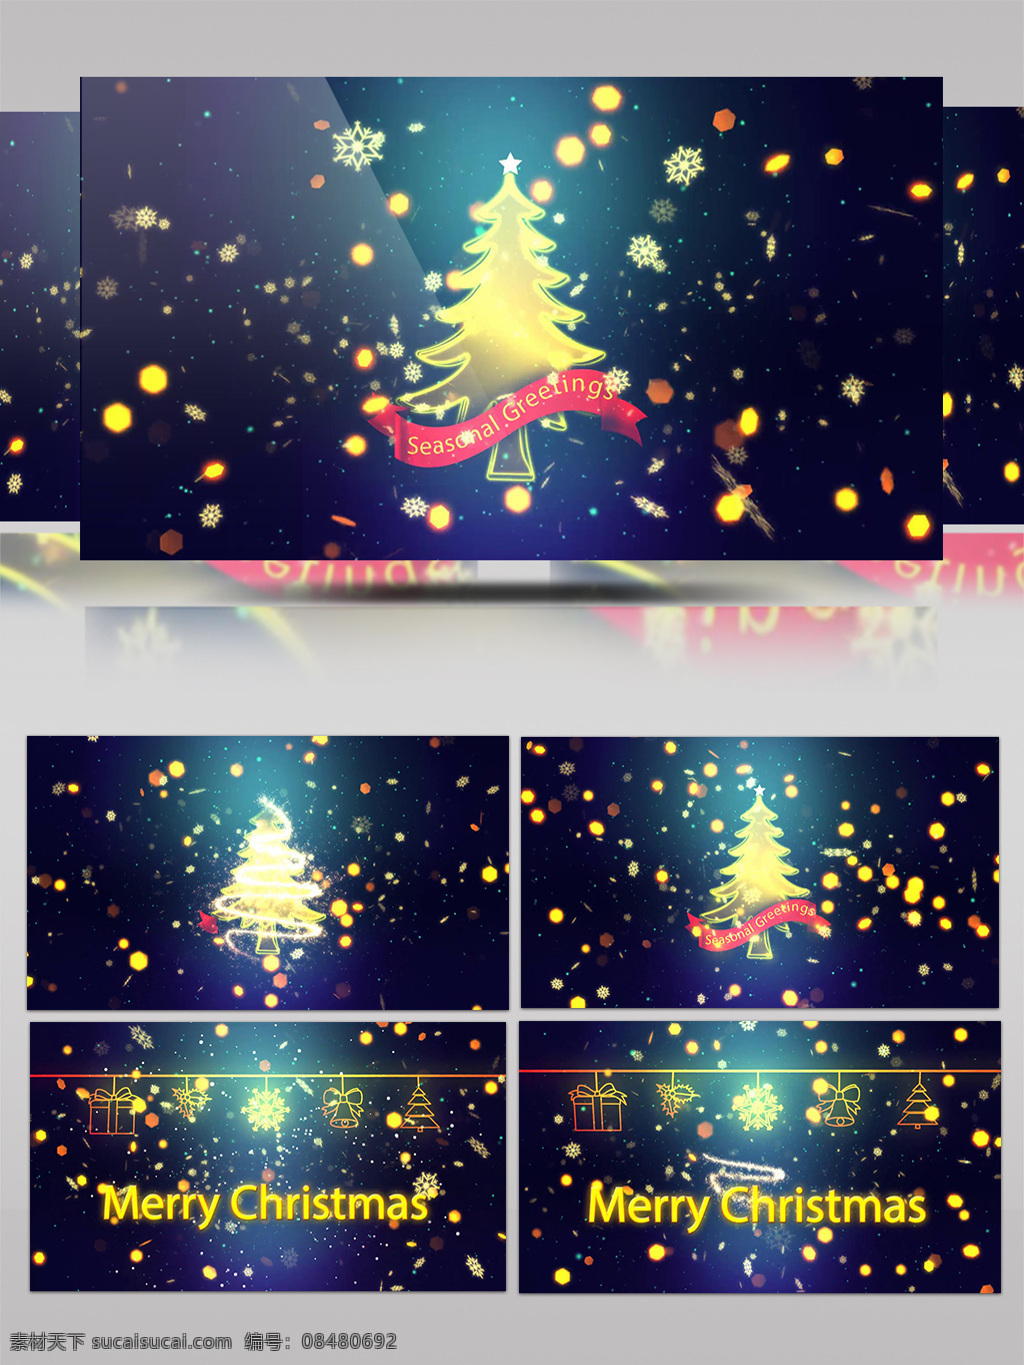 掉落 闪烁 光斑 中 美好 圣诞 祝福 ae 模板 圣诞树 ae模板 圣诞粒子 圣诞雪花